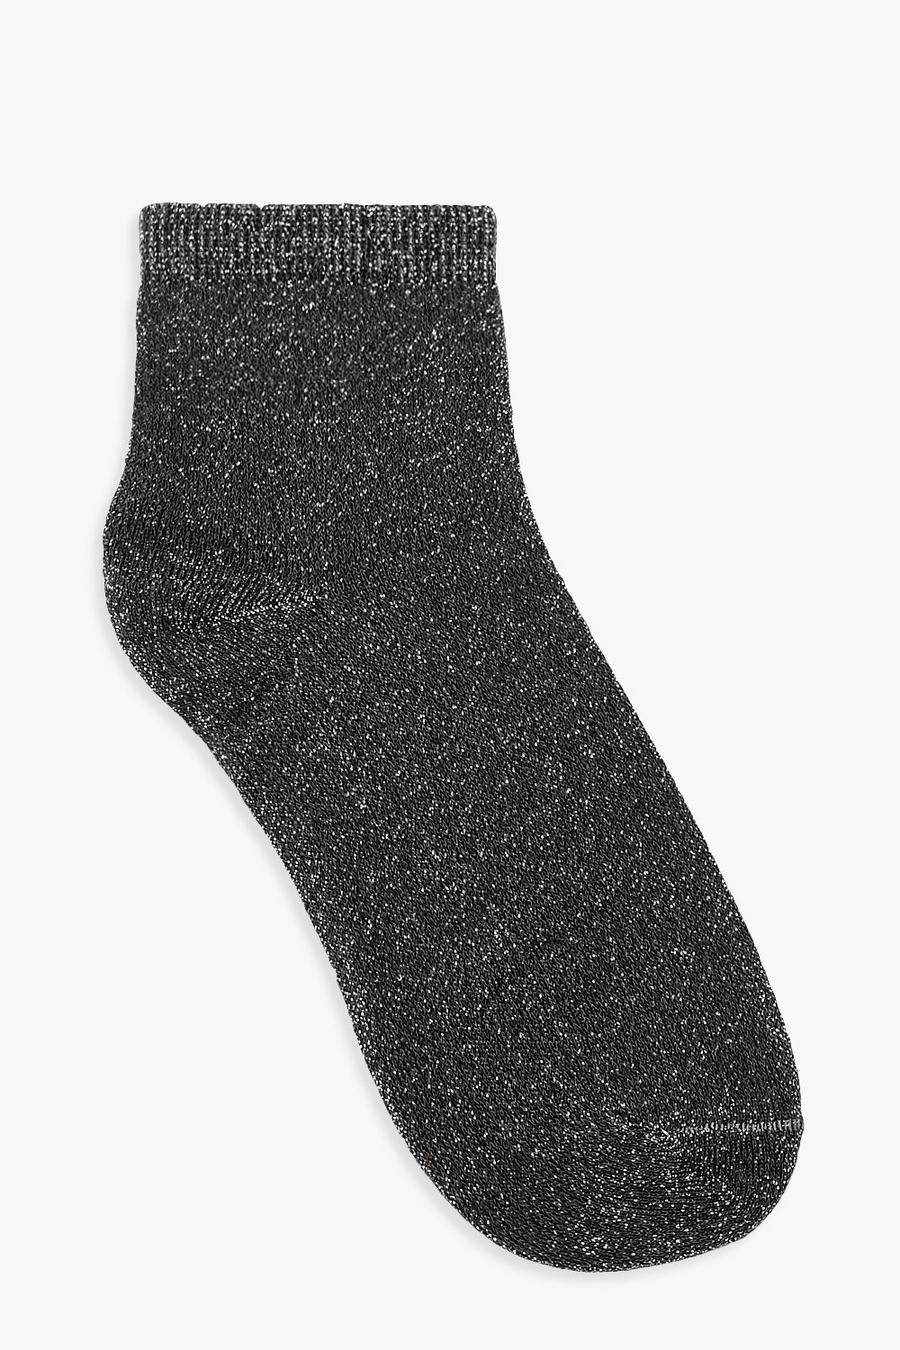 Silver Glitter Ankle Socks image number 1